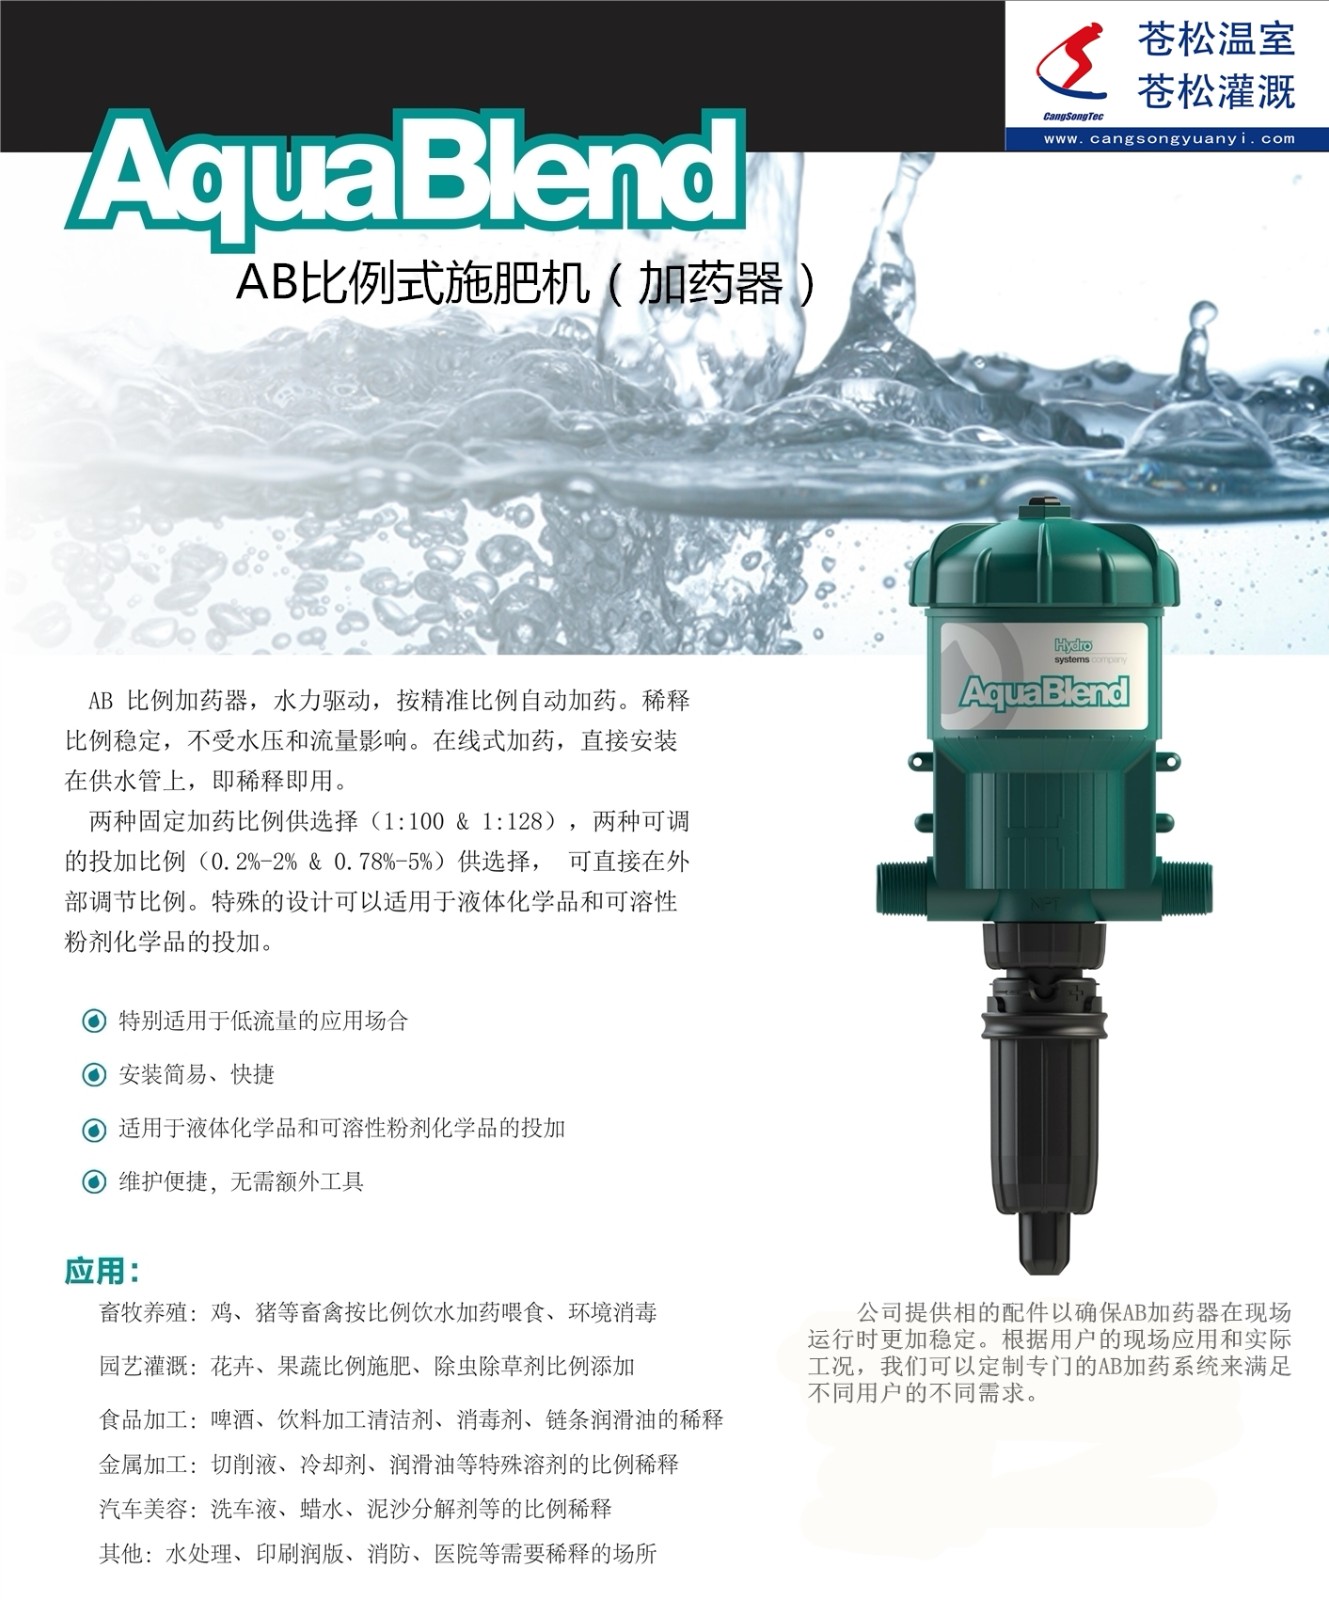 302101网站--美国都福集团--AB（Aqua Blend）系列比例式施肥机--技术资料1.jpg